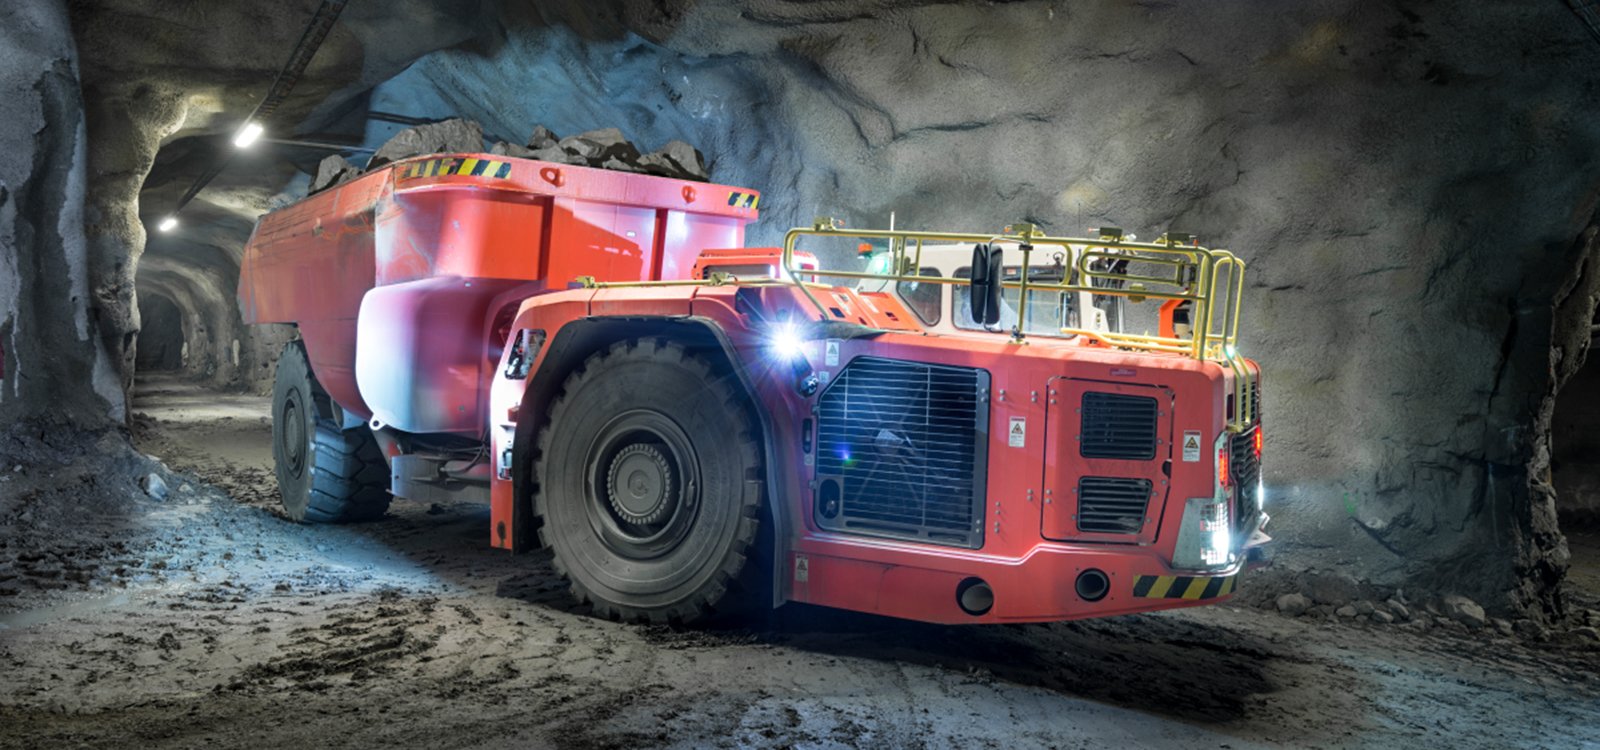 <p>Firma Sandvik Mining and Rock Technology dostarczy rozwiązania AutoMine Fleet do wozów odstawczych pracujących pod ziemią w kopalni El Teniente, należącej do firmy Codelco.</p>
